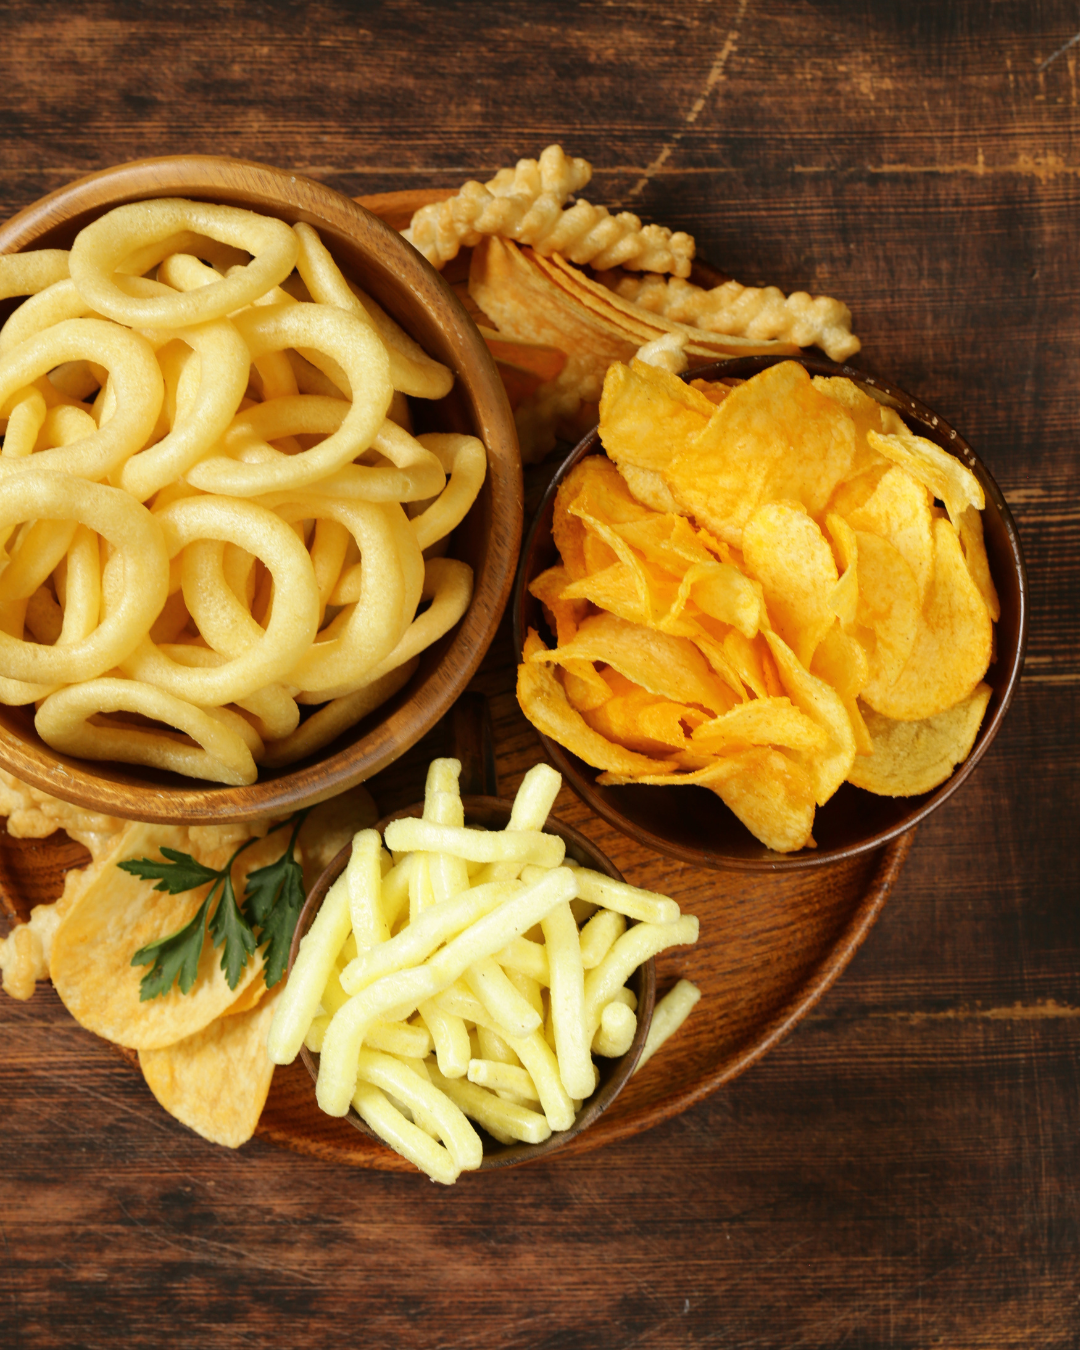 Consumo de gordura trans nos alimentos prejudica a função cerebral